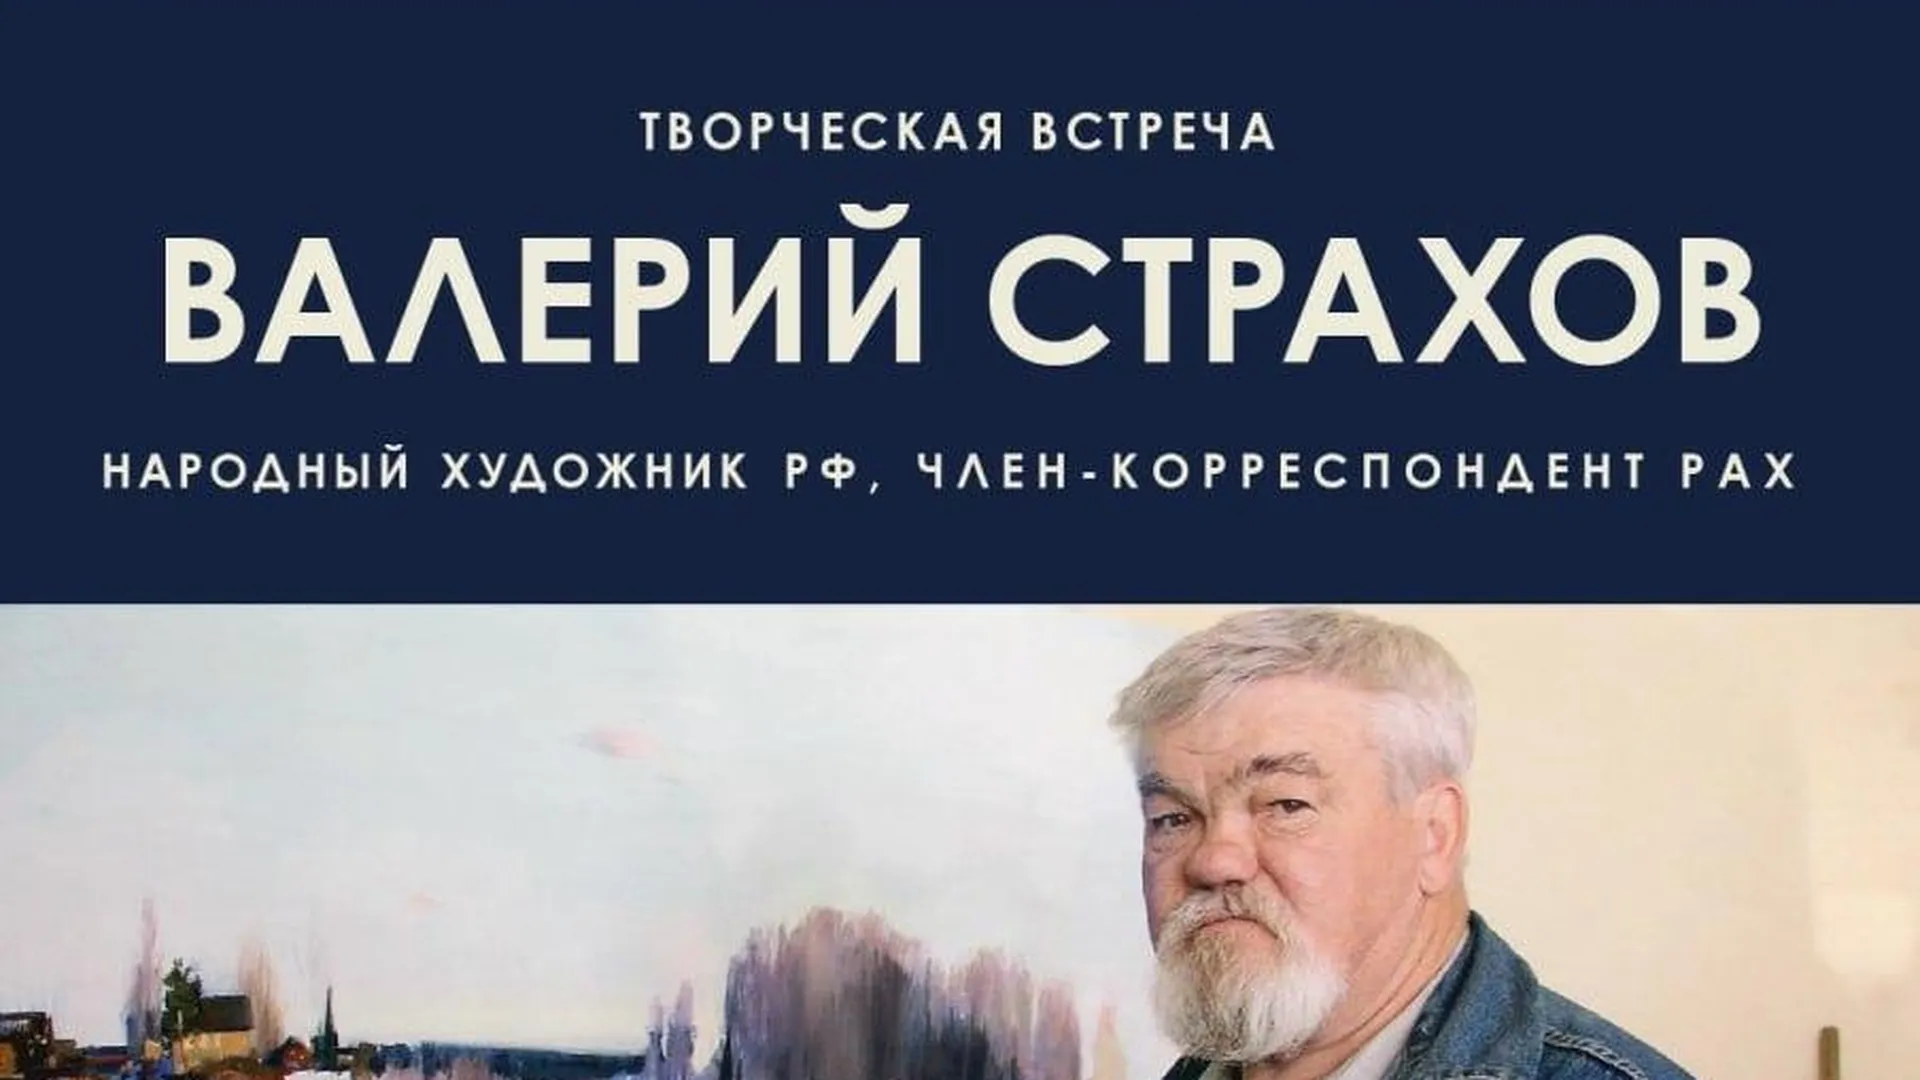 Творческая встреча с народным художником РФ Валерием Страховым пройдет в Коломне 19 марта